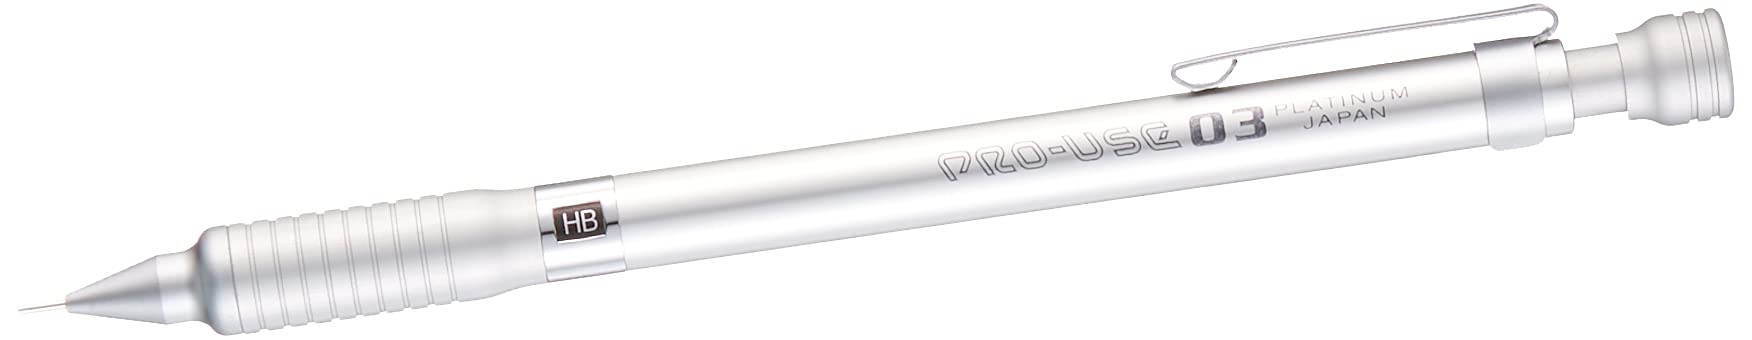 白金鋼筆專業用途銀色自動鉛筆 0.3 mm - MSD-1000A#9 型號